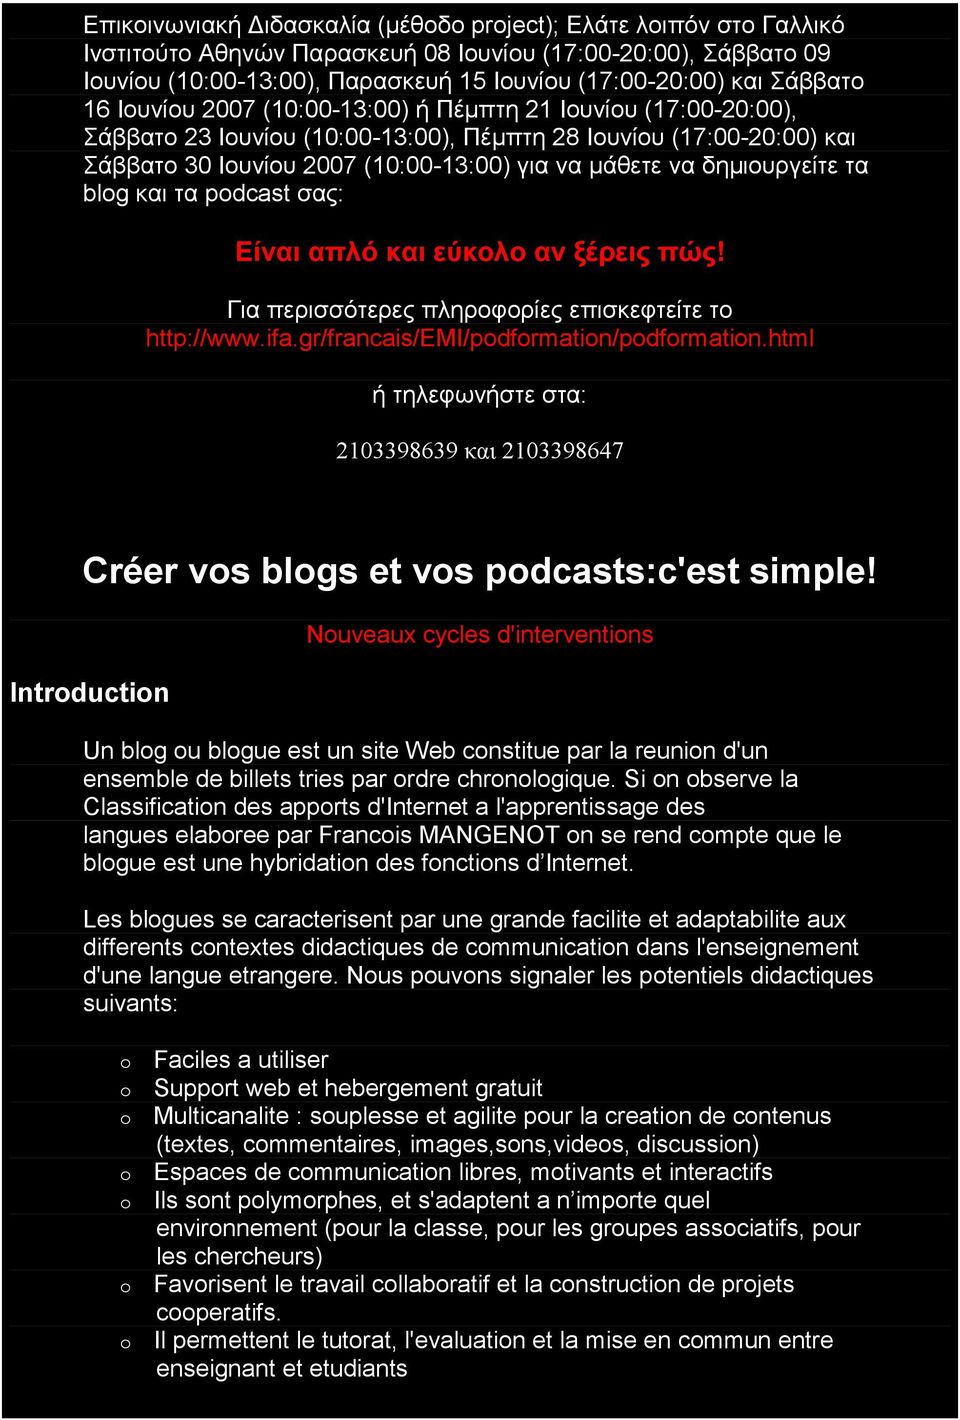 δηµιουργείτε τα blog και τα podcast σας: Eίναι απλό και εύκολο αν ξέρεις πώς! Για περισσότερες πληροφορίες επισκεφτείτε το http://www.ifa.gr/francais/emi/podformation/podformation.